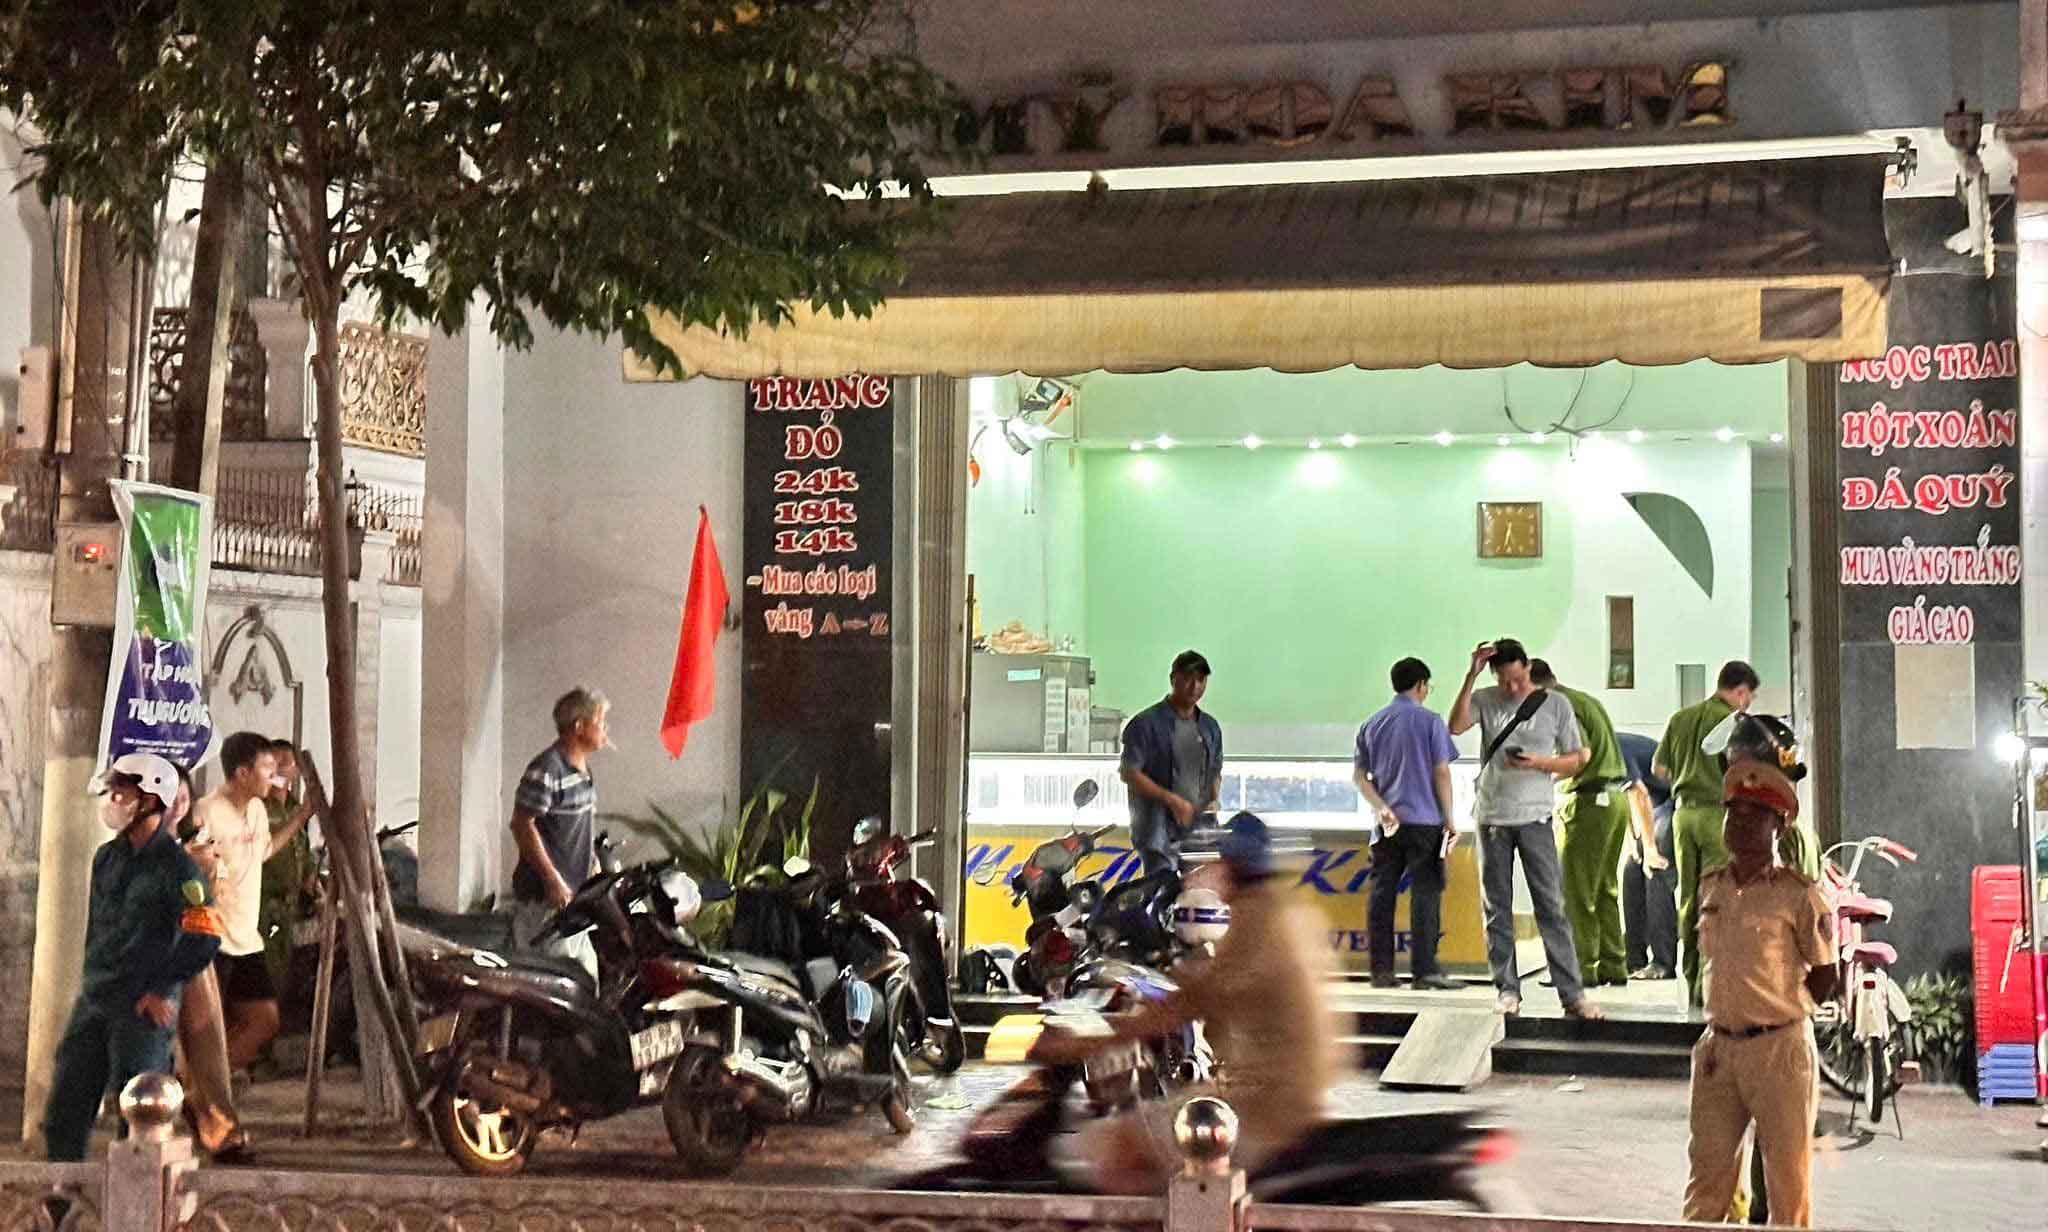 Nóng: Video chi tiết vụ cướp tiệm vàng tại Phan Thiết